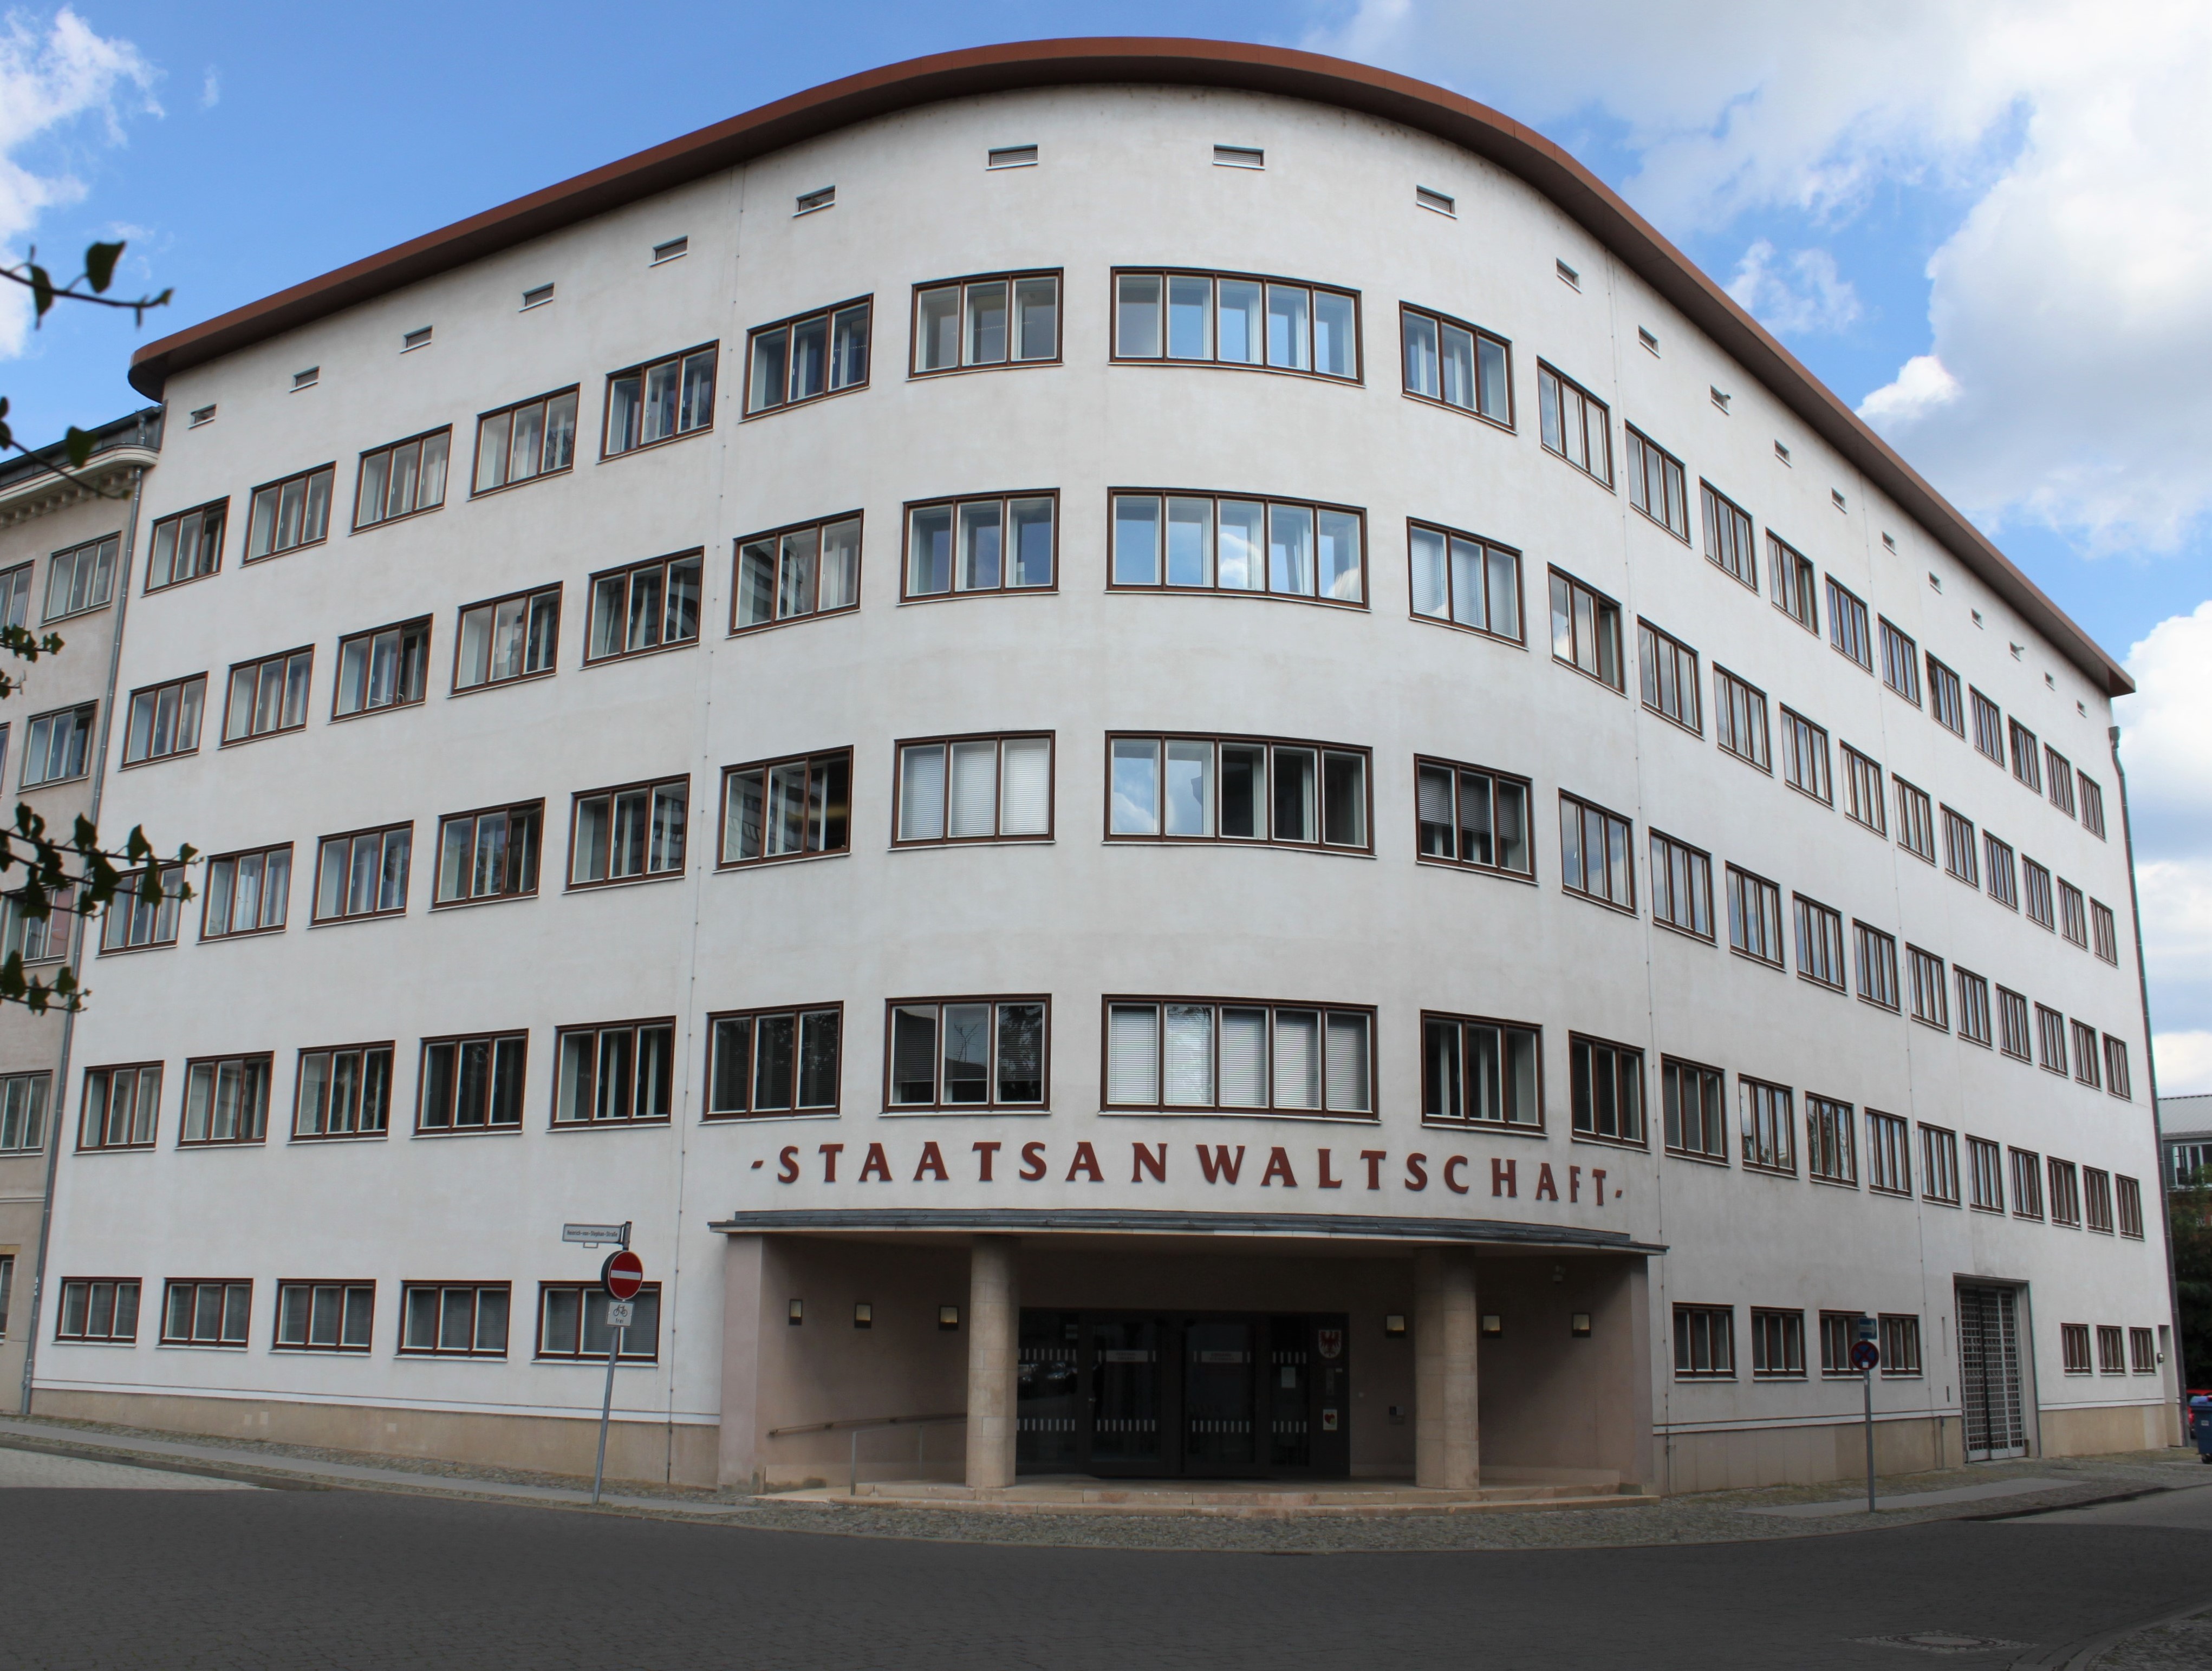 Bild: Ansicht des Dienstgebäudes der Staatsanwaltschaft Frankfurt (Oder)